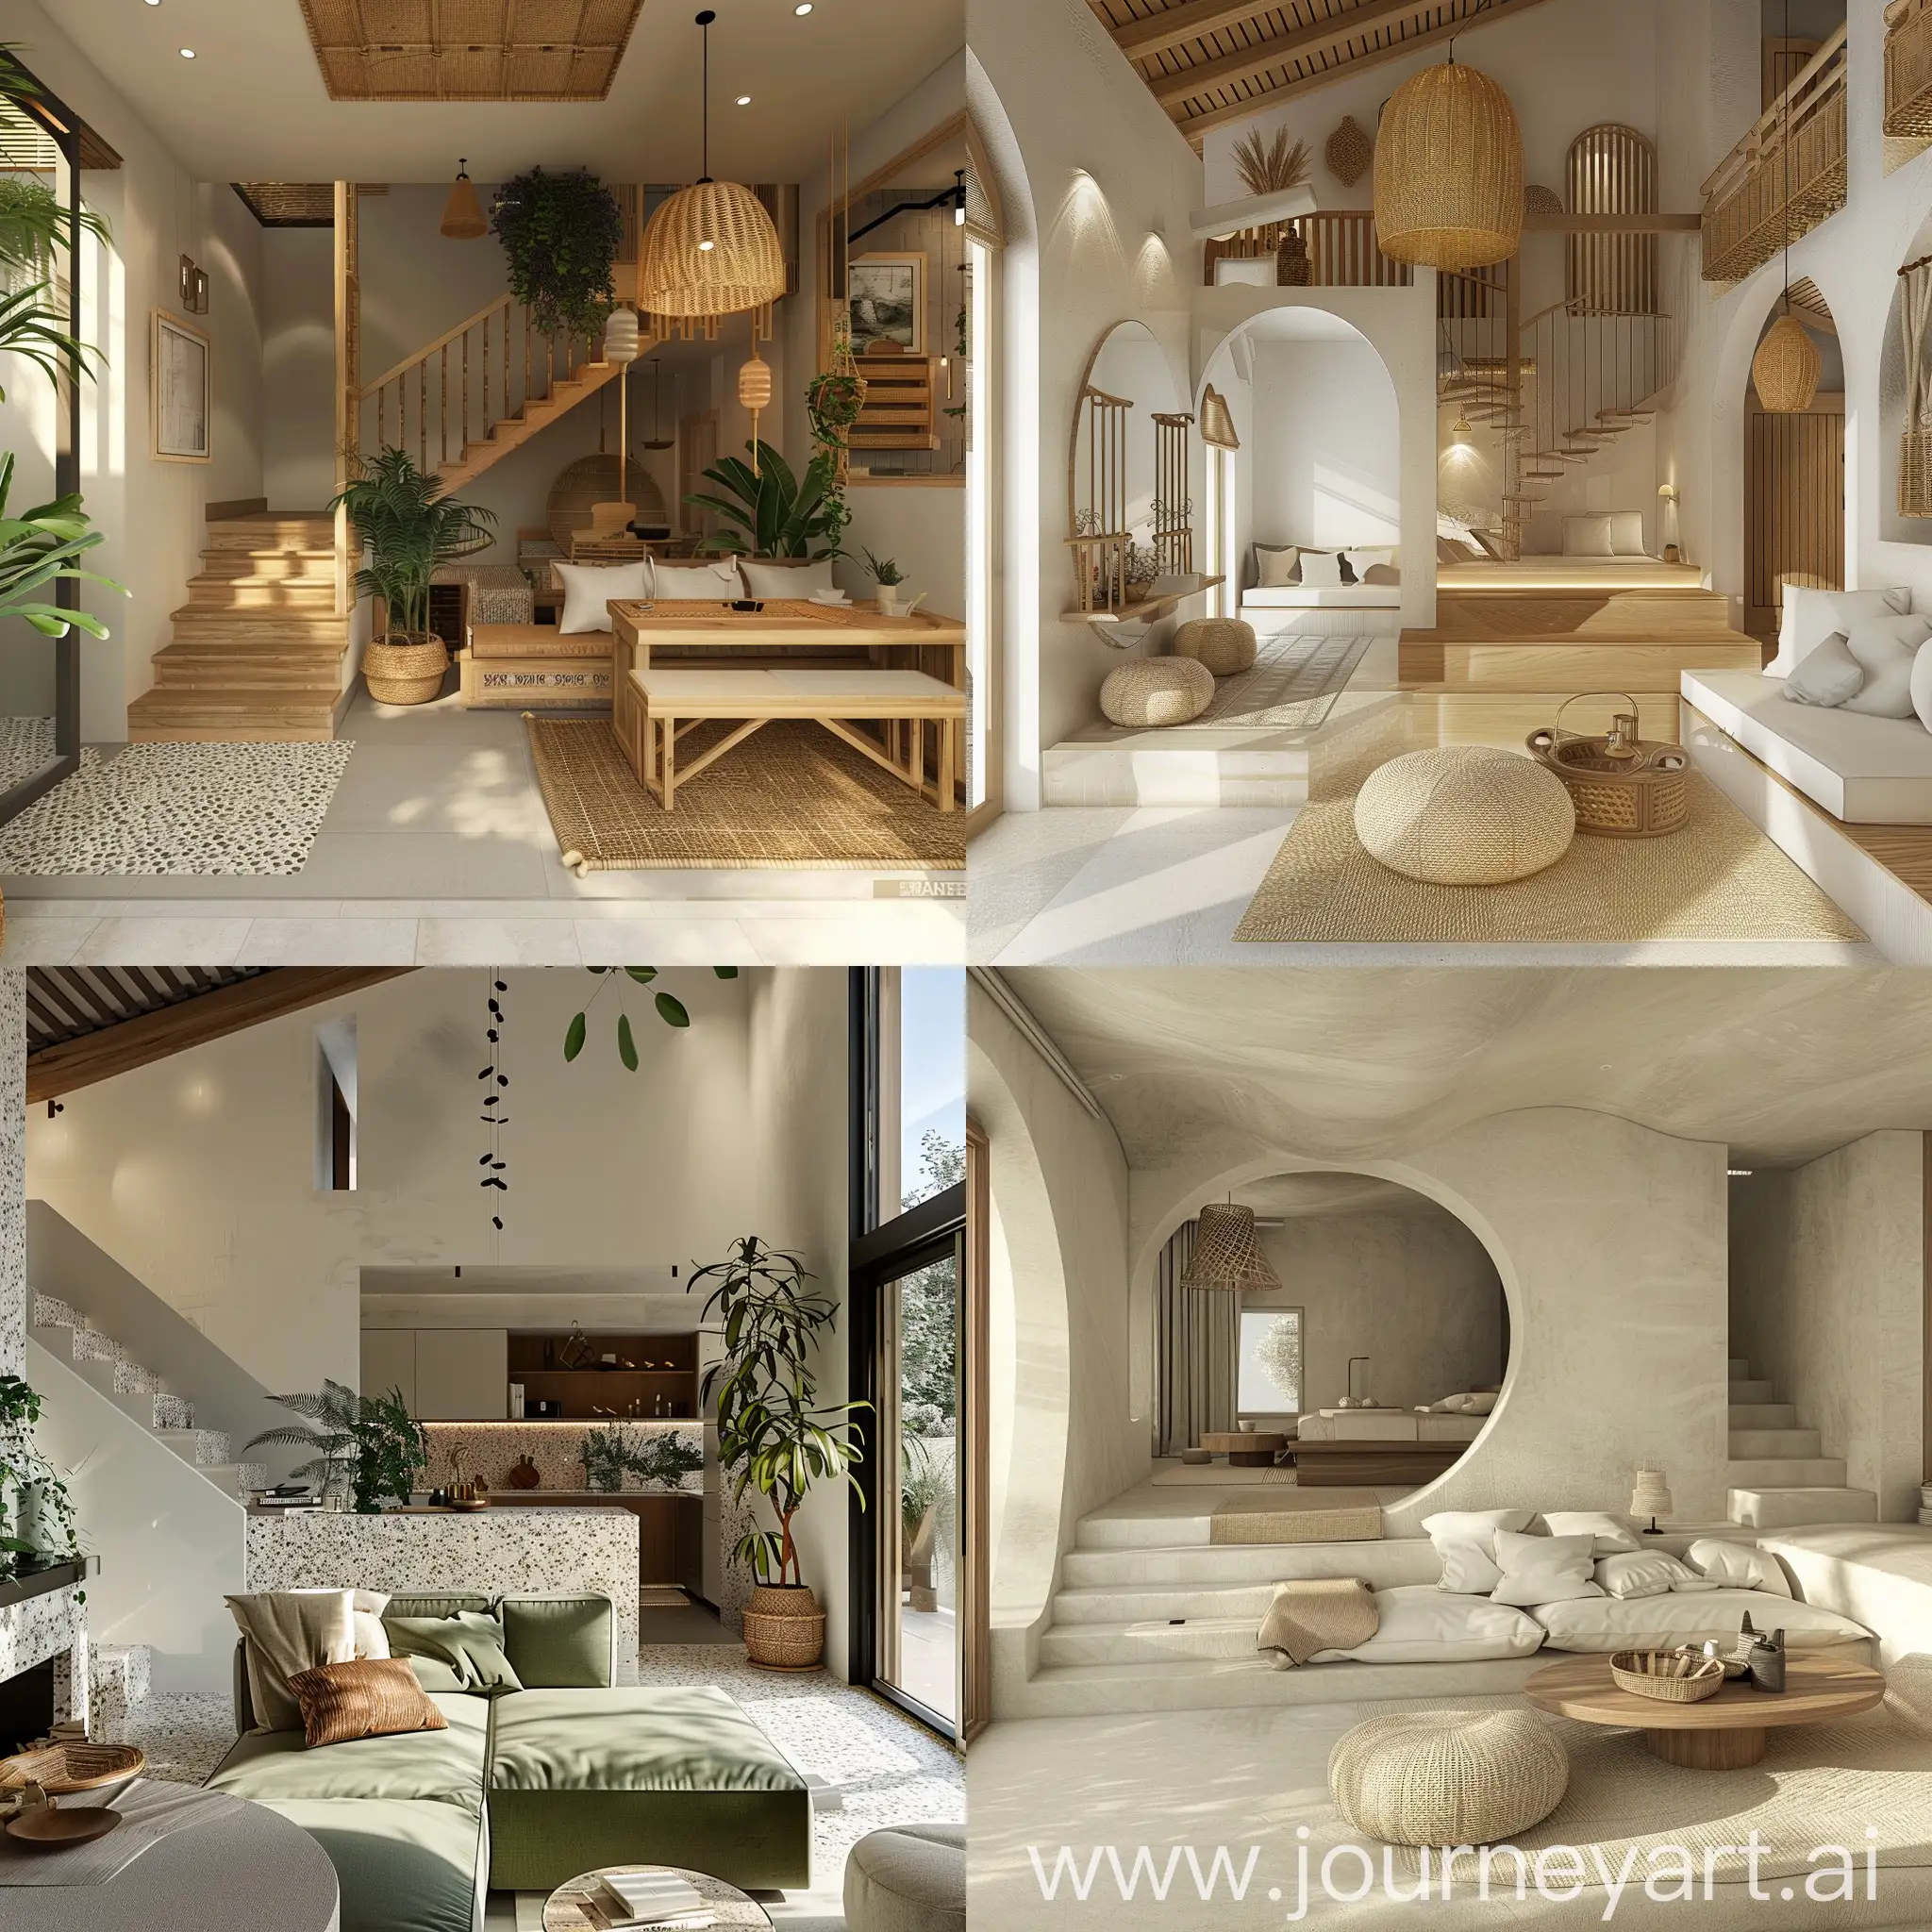 Cozy-Daydream-Interior-of-a-Small-Villa